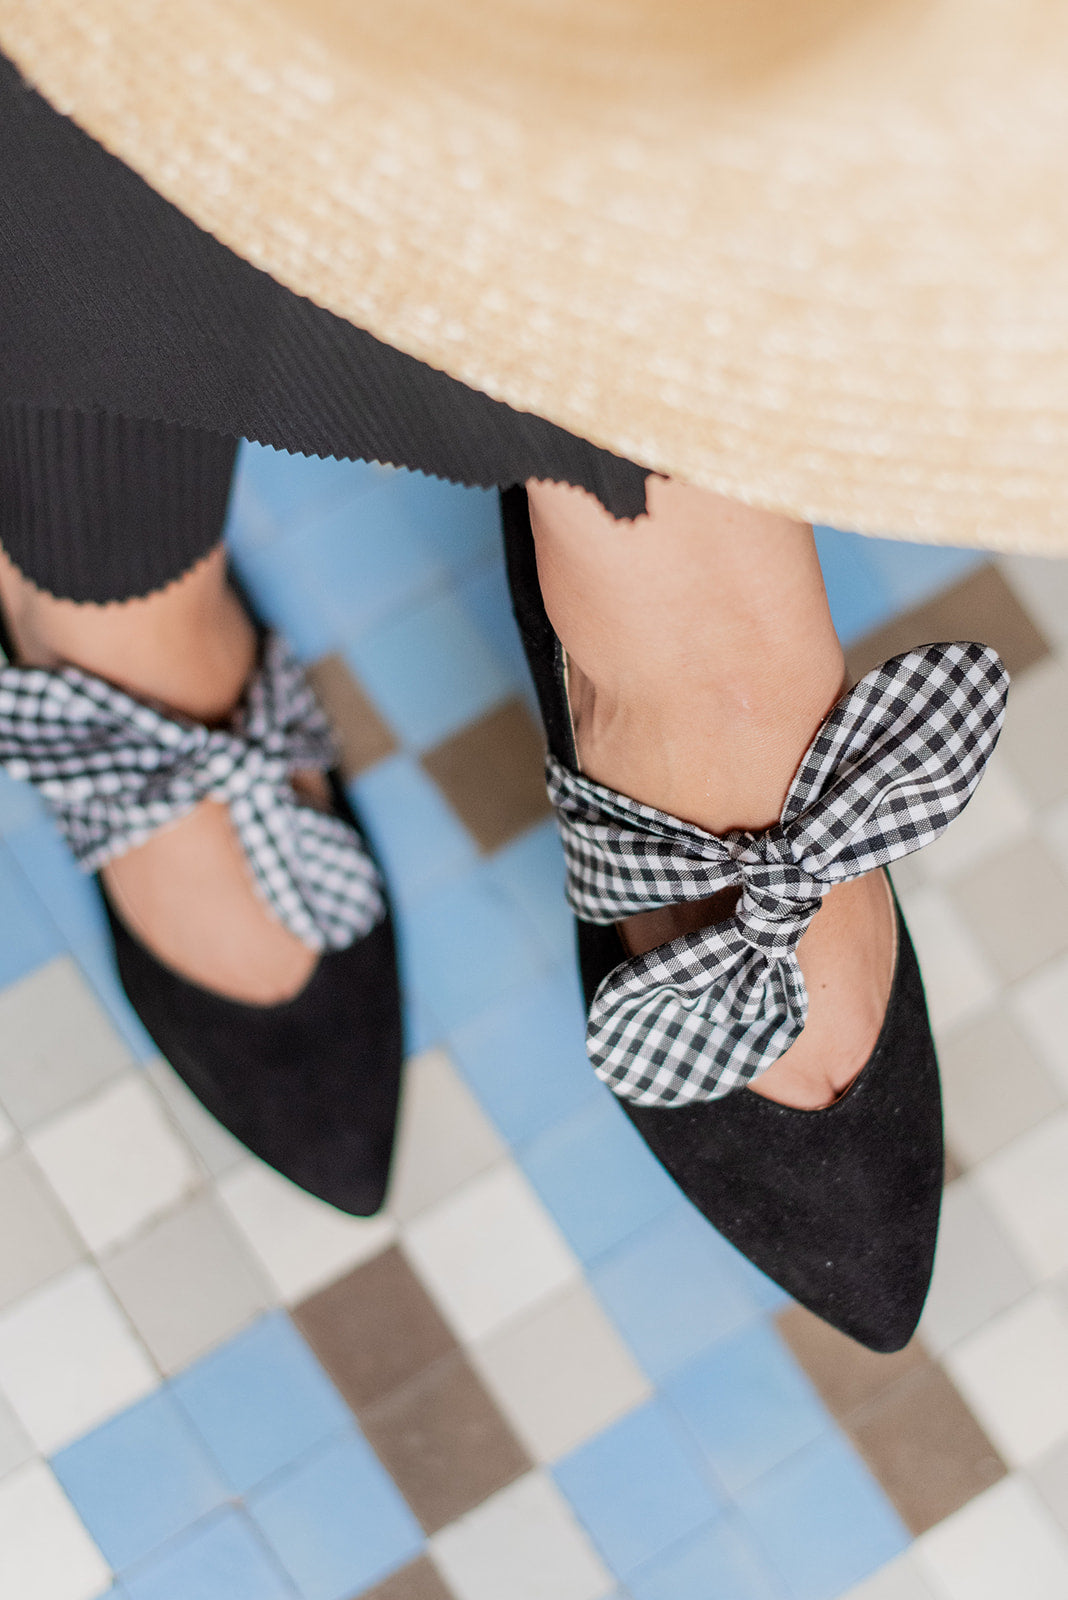 Matilda Negro Vichy-bailarinas-ante, bailarinas, matilda, tacón de 2, vichy, zapato plano, zapatos de color negro-Loovshoes